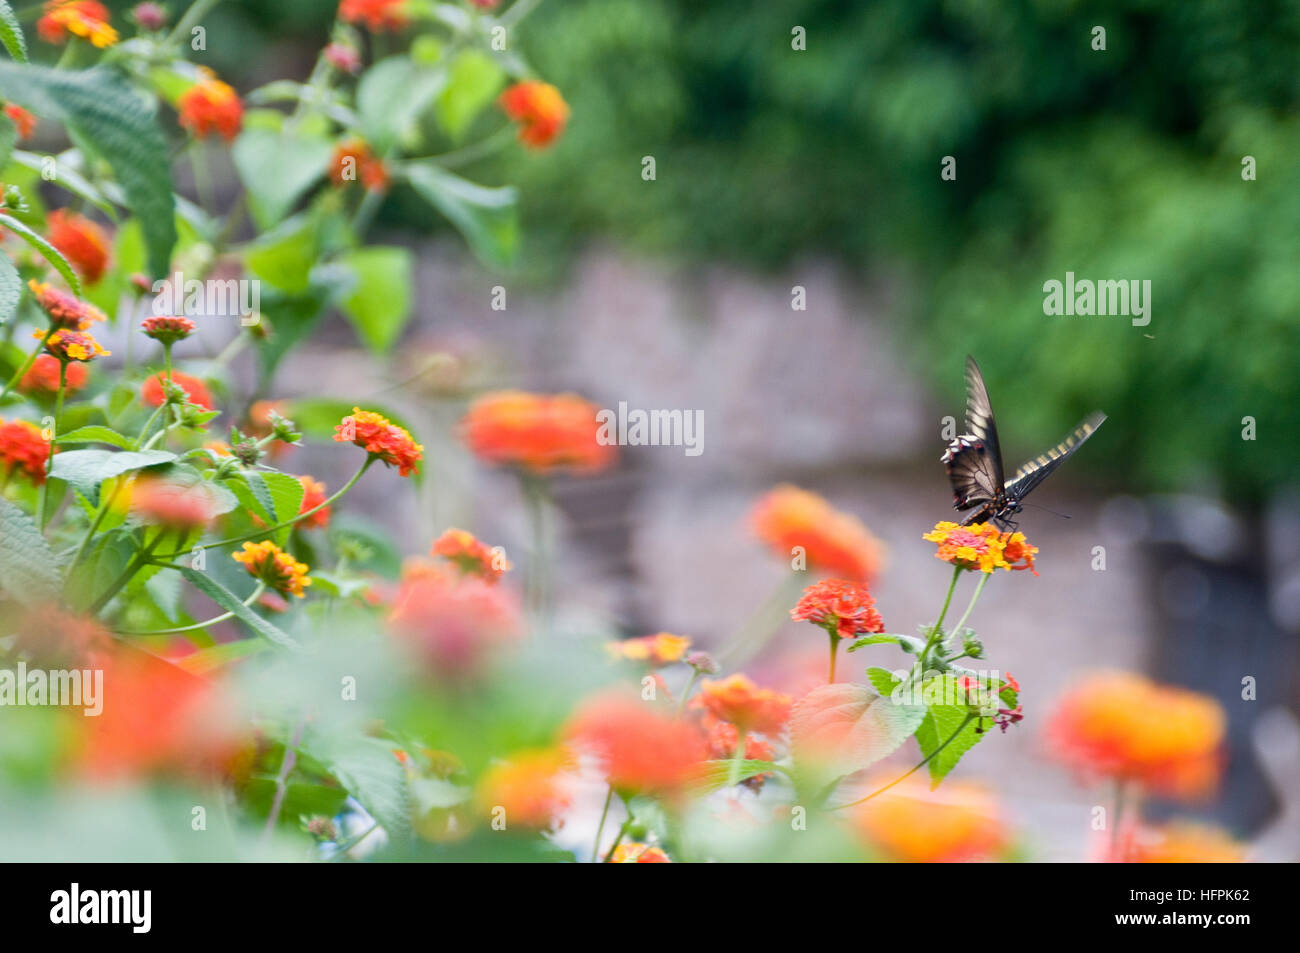 Butterfly on an orange flower, in a garden Stock Photo